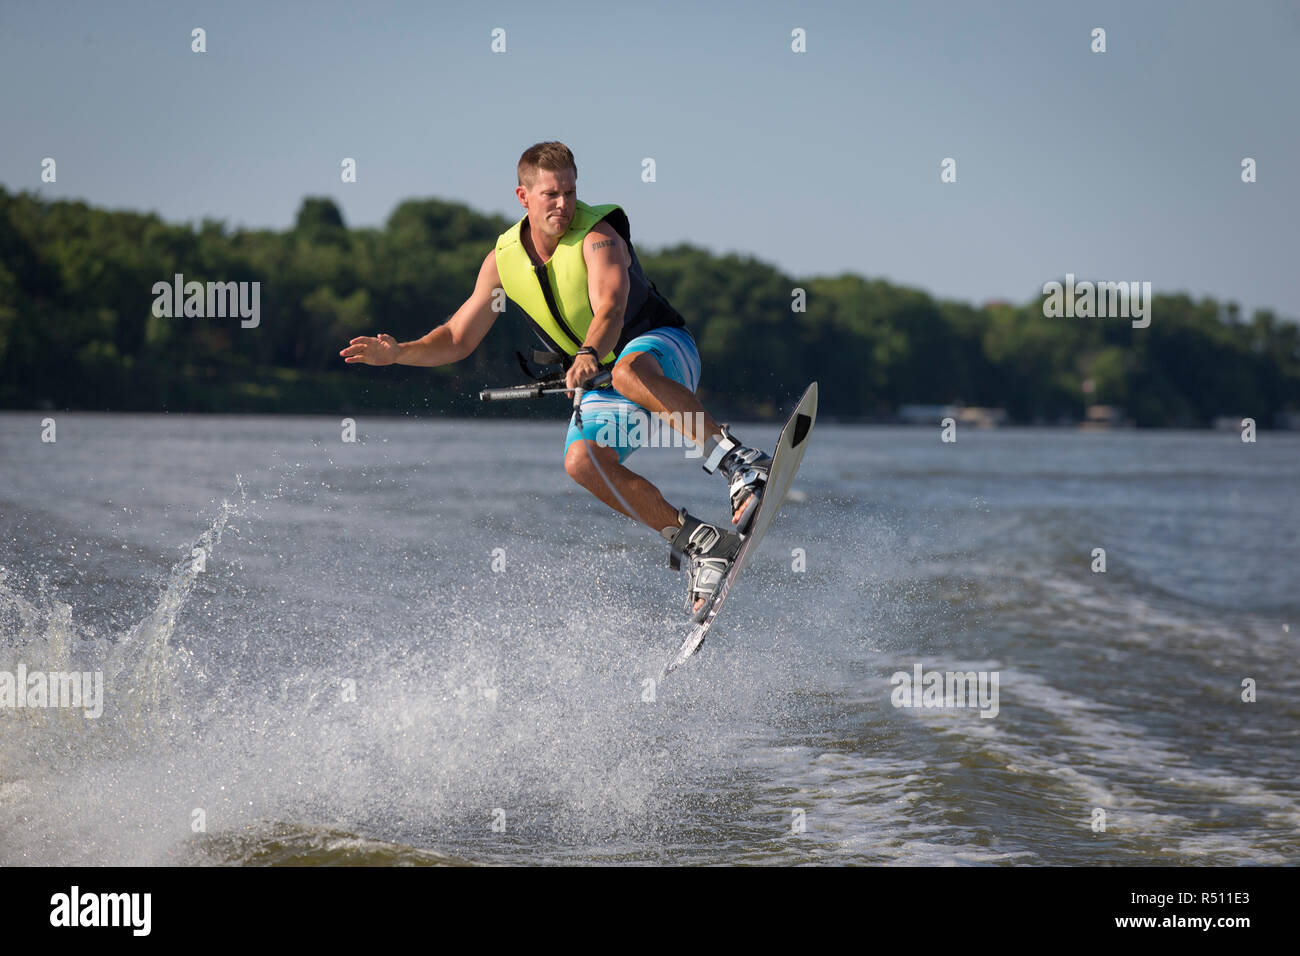 Foto von Mann in der Luft beim Wakeboarden auf dem Fluss Stockfoto